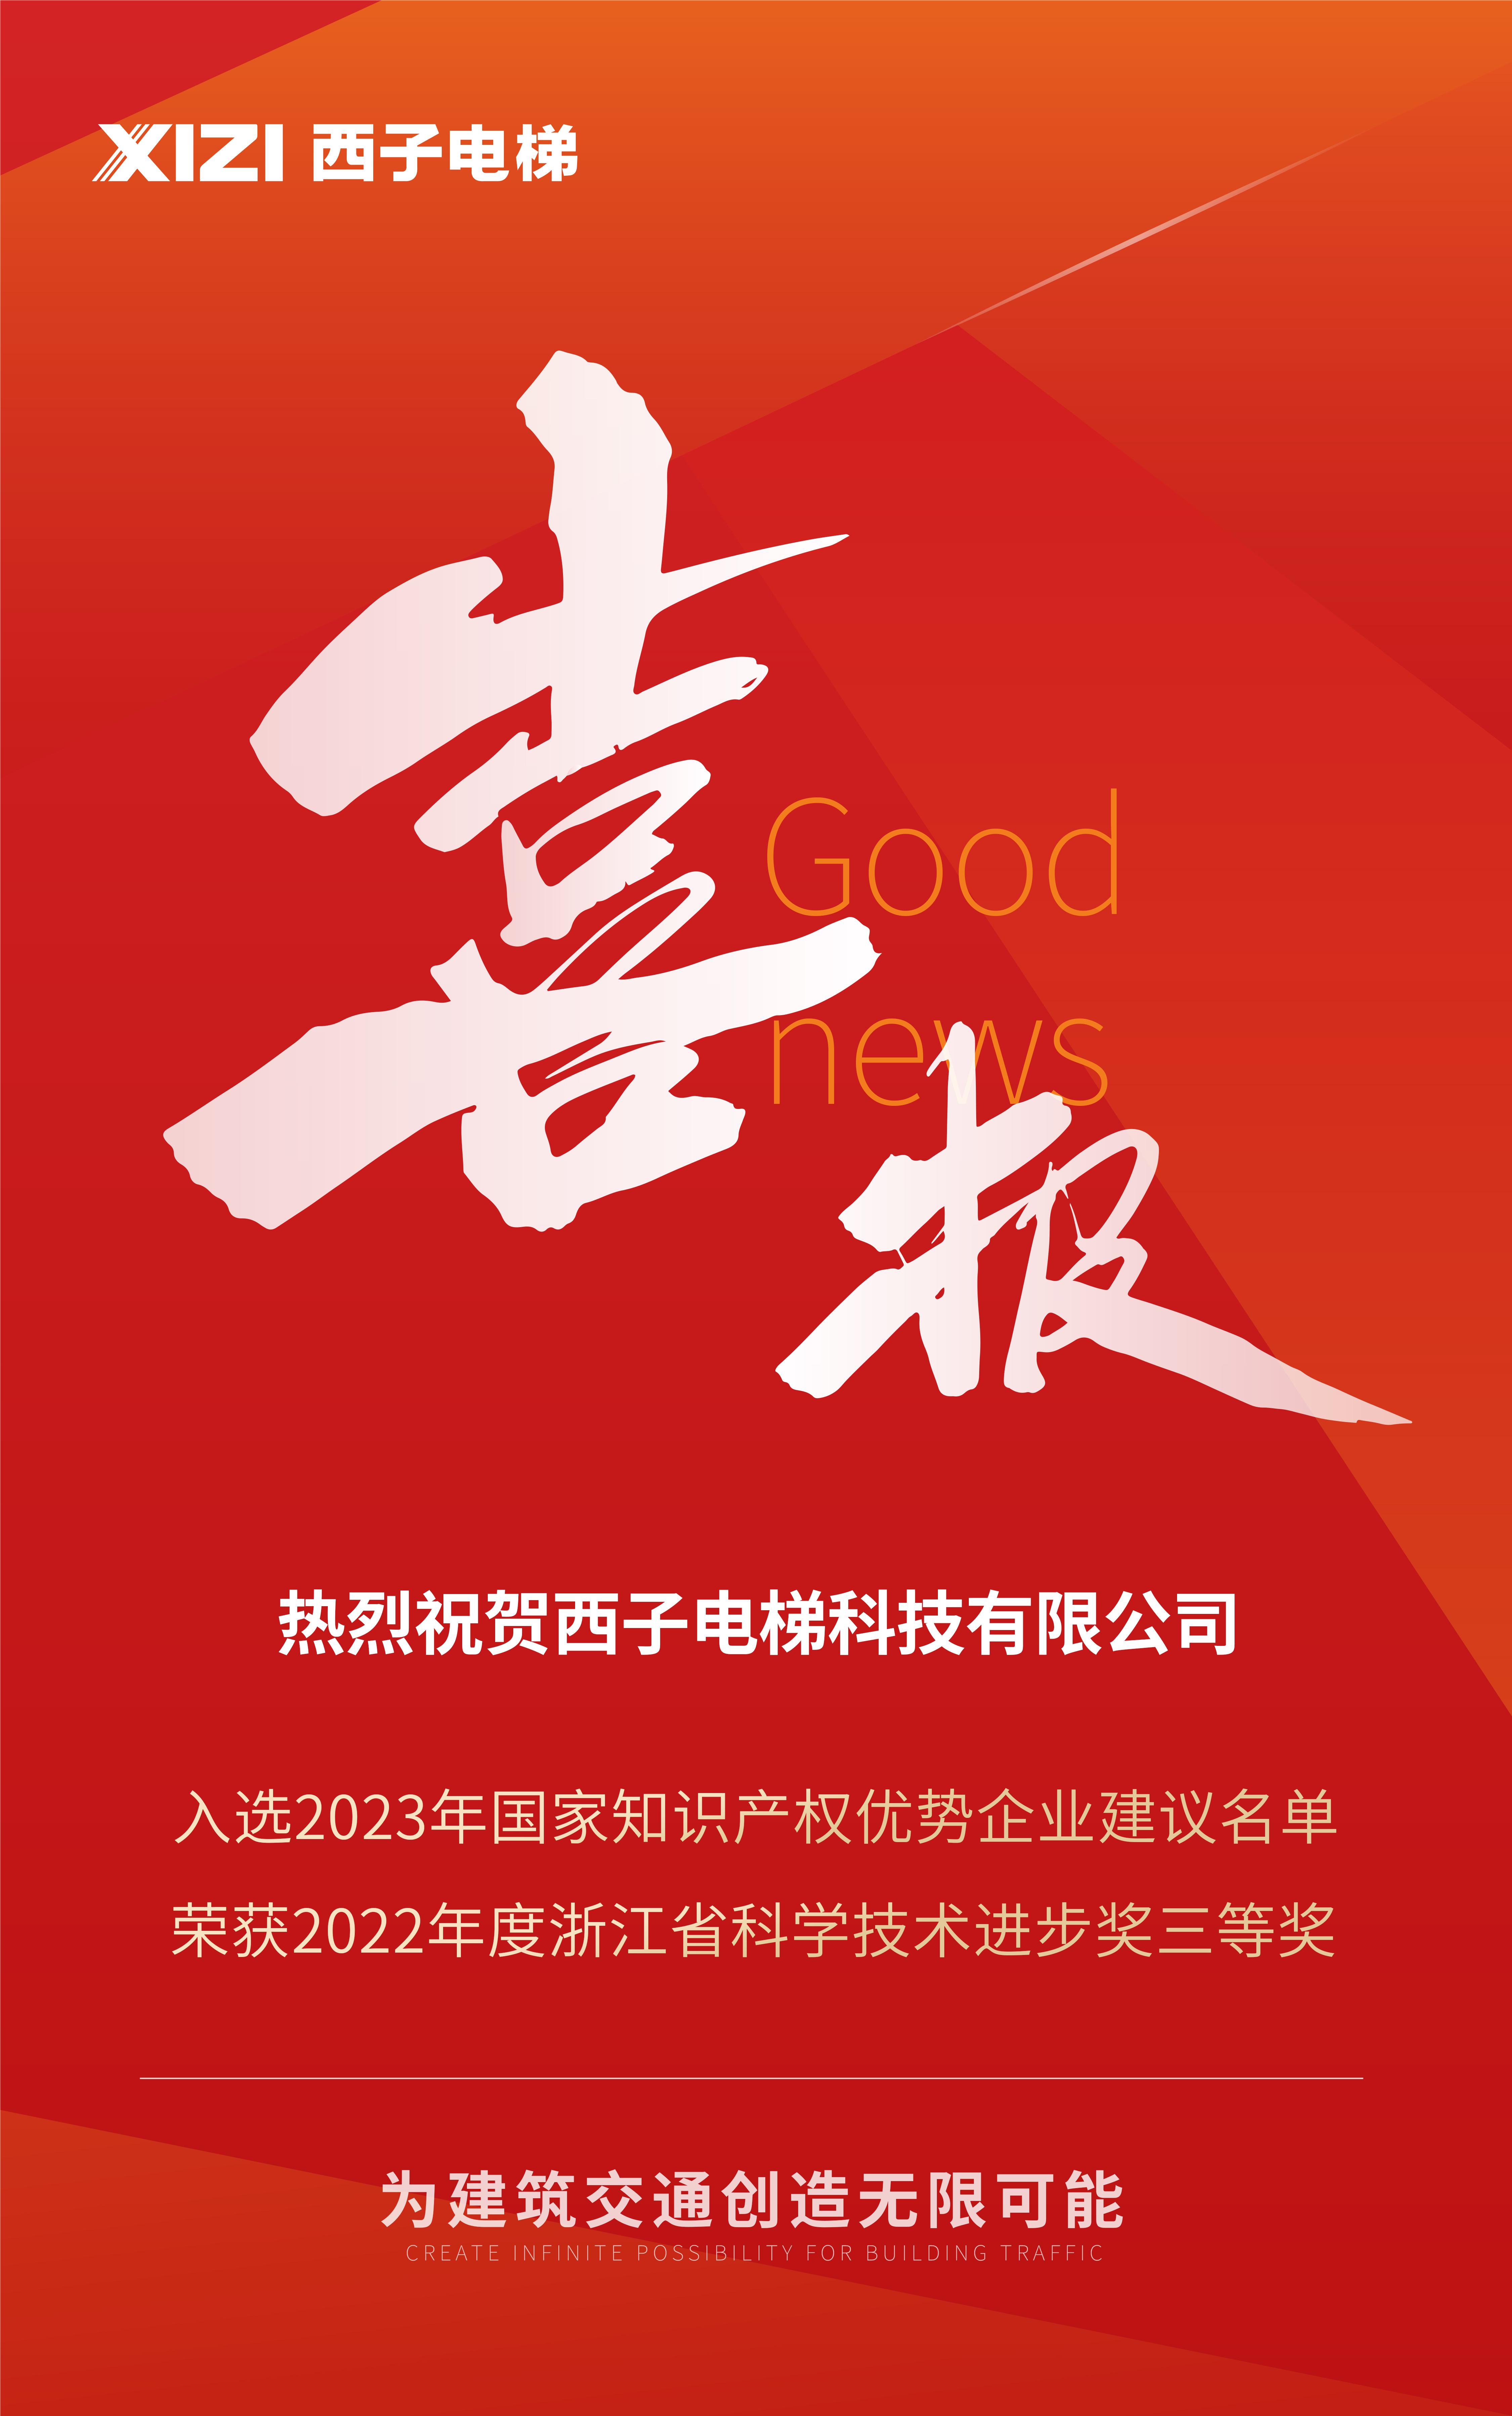 杭州市优质产品推荐目录喜报0511_画板 1 副本 - 副本